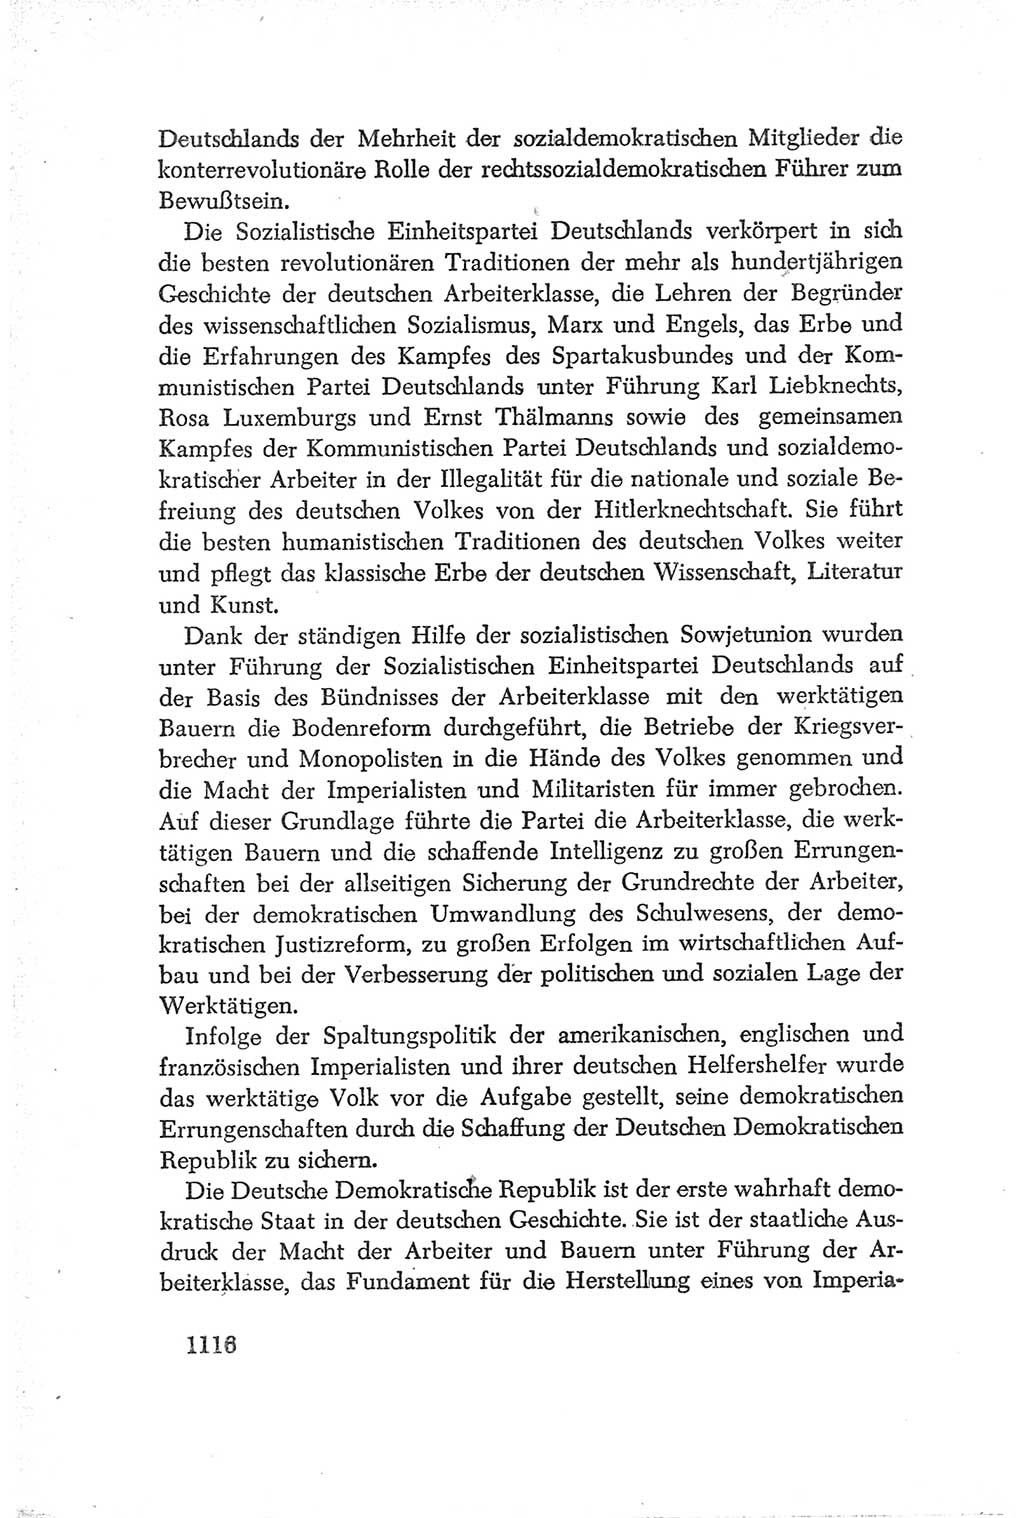 Protokoll der Verhandlungen des Ⅳ. Parteitages der Sozialistischen Einheitspartei Deutschlands (SED) [Deutsche Demokratische Republik (DDR)] 1954, Seite 1116